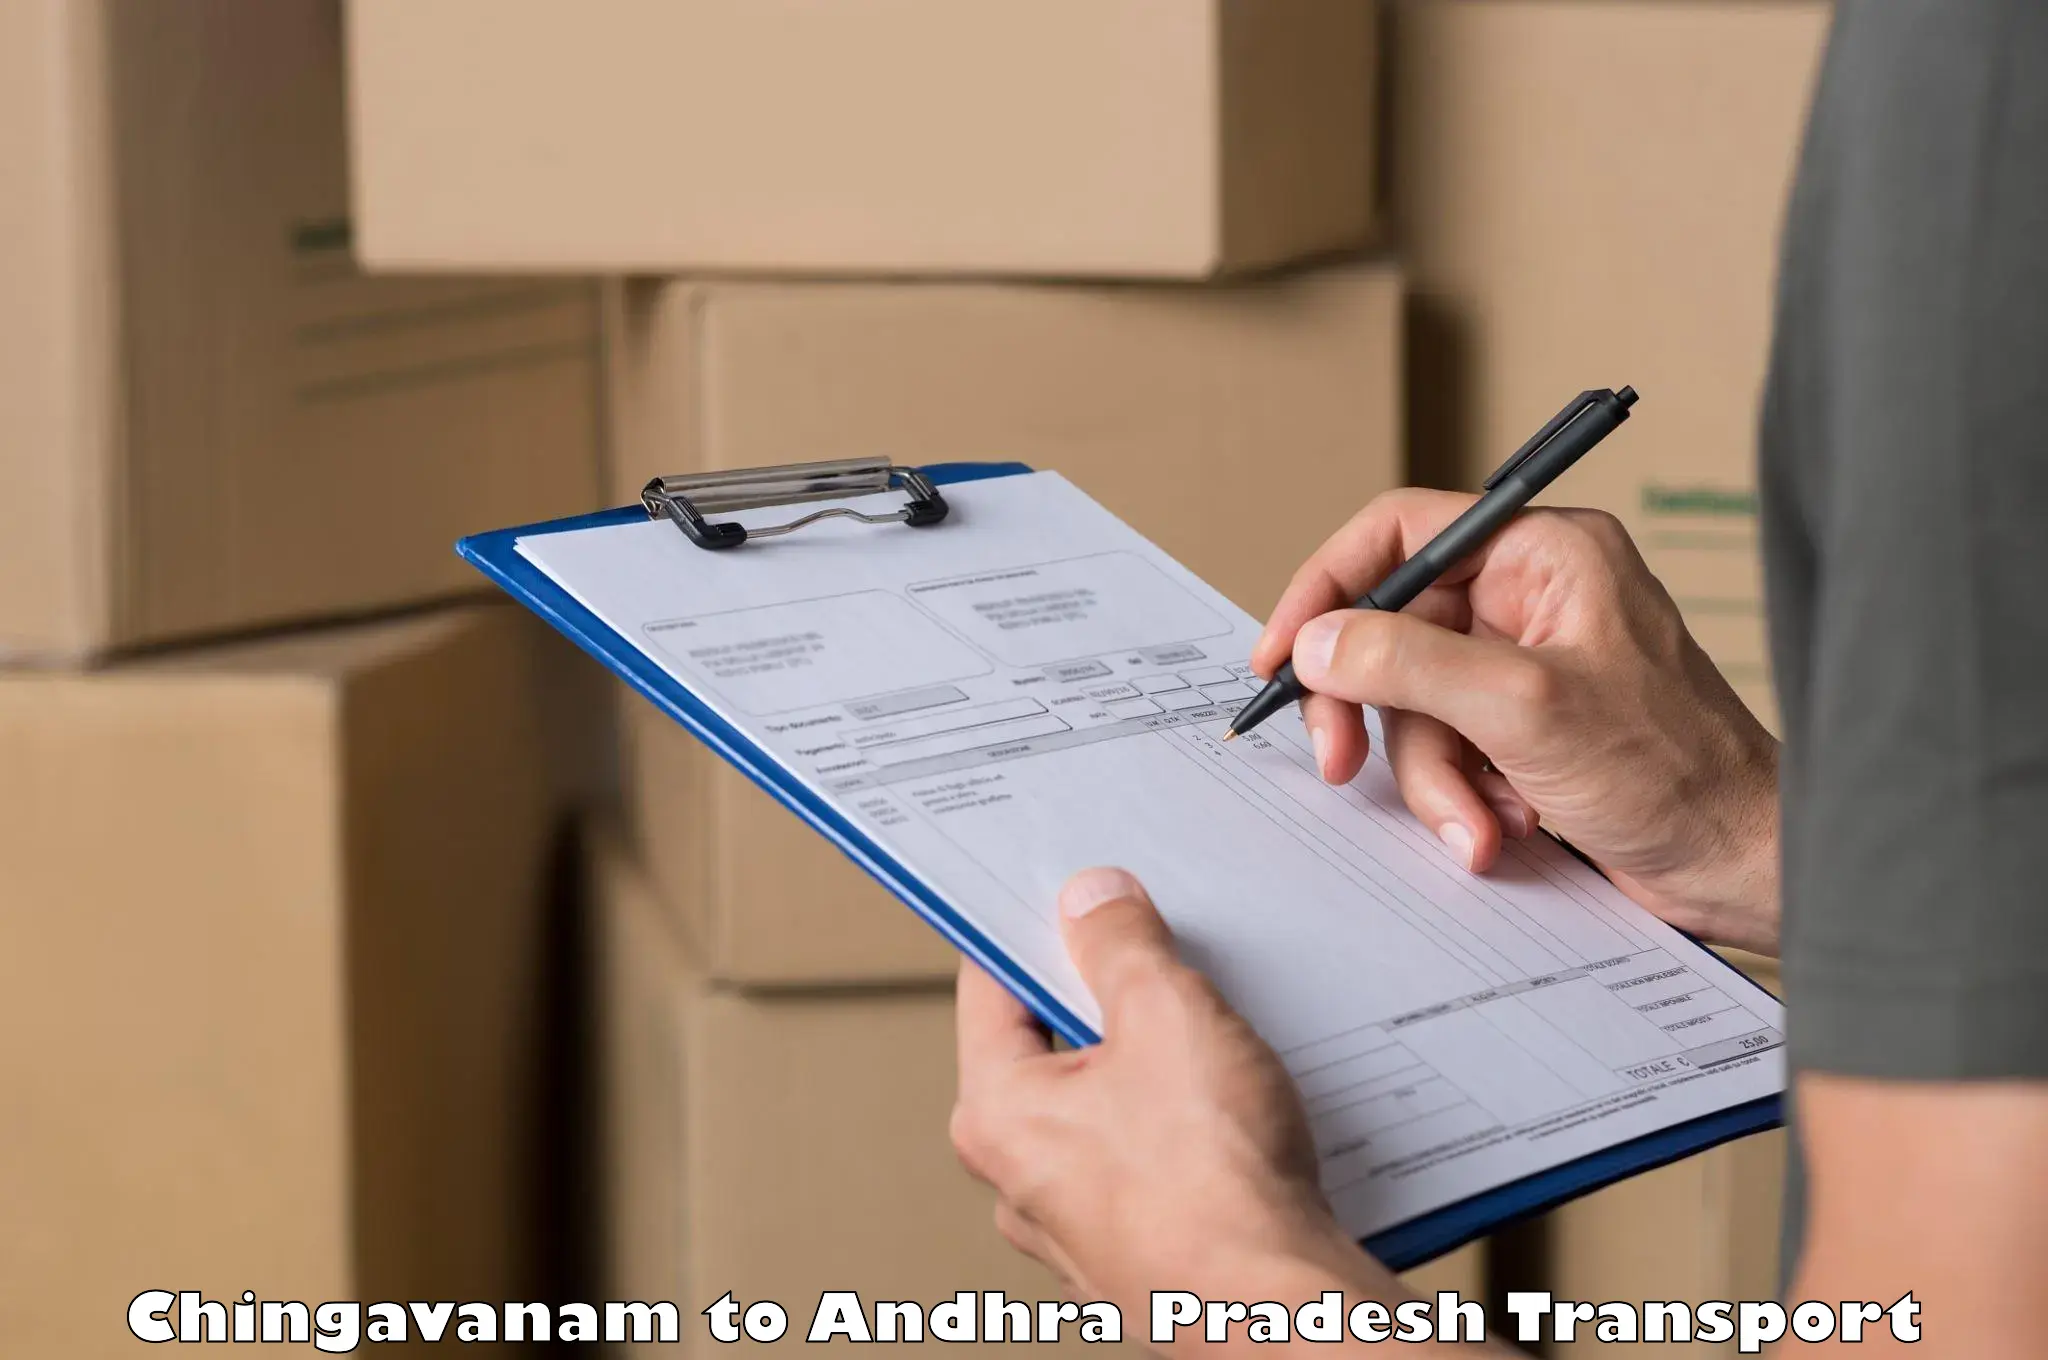 Truck transport companies in India Chingavanam to Chodavaram